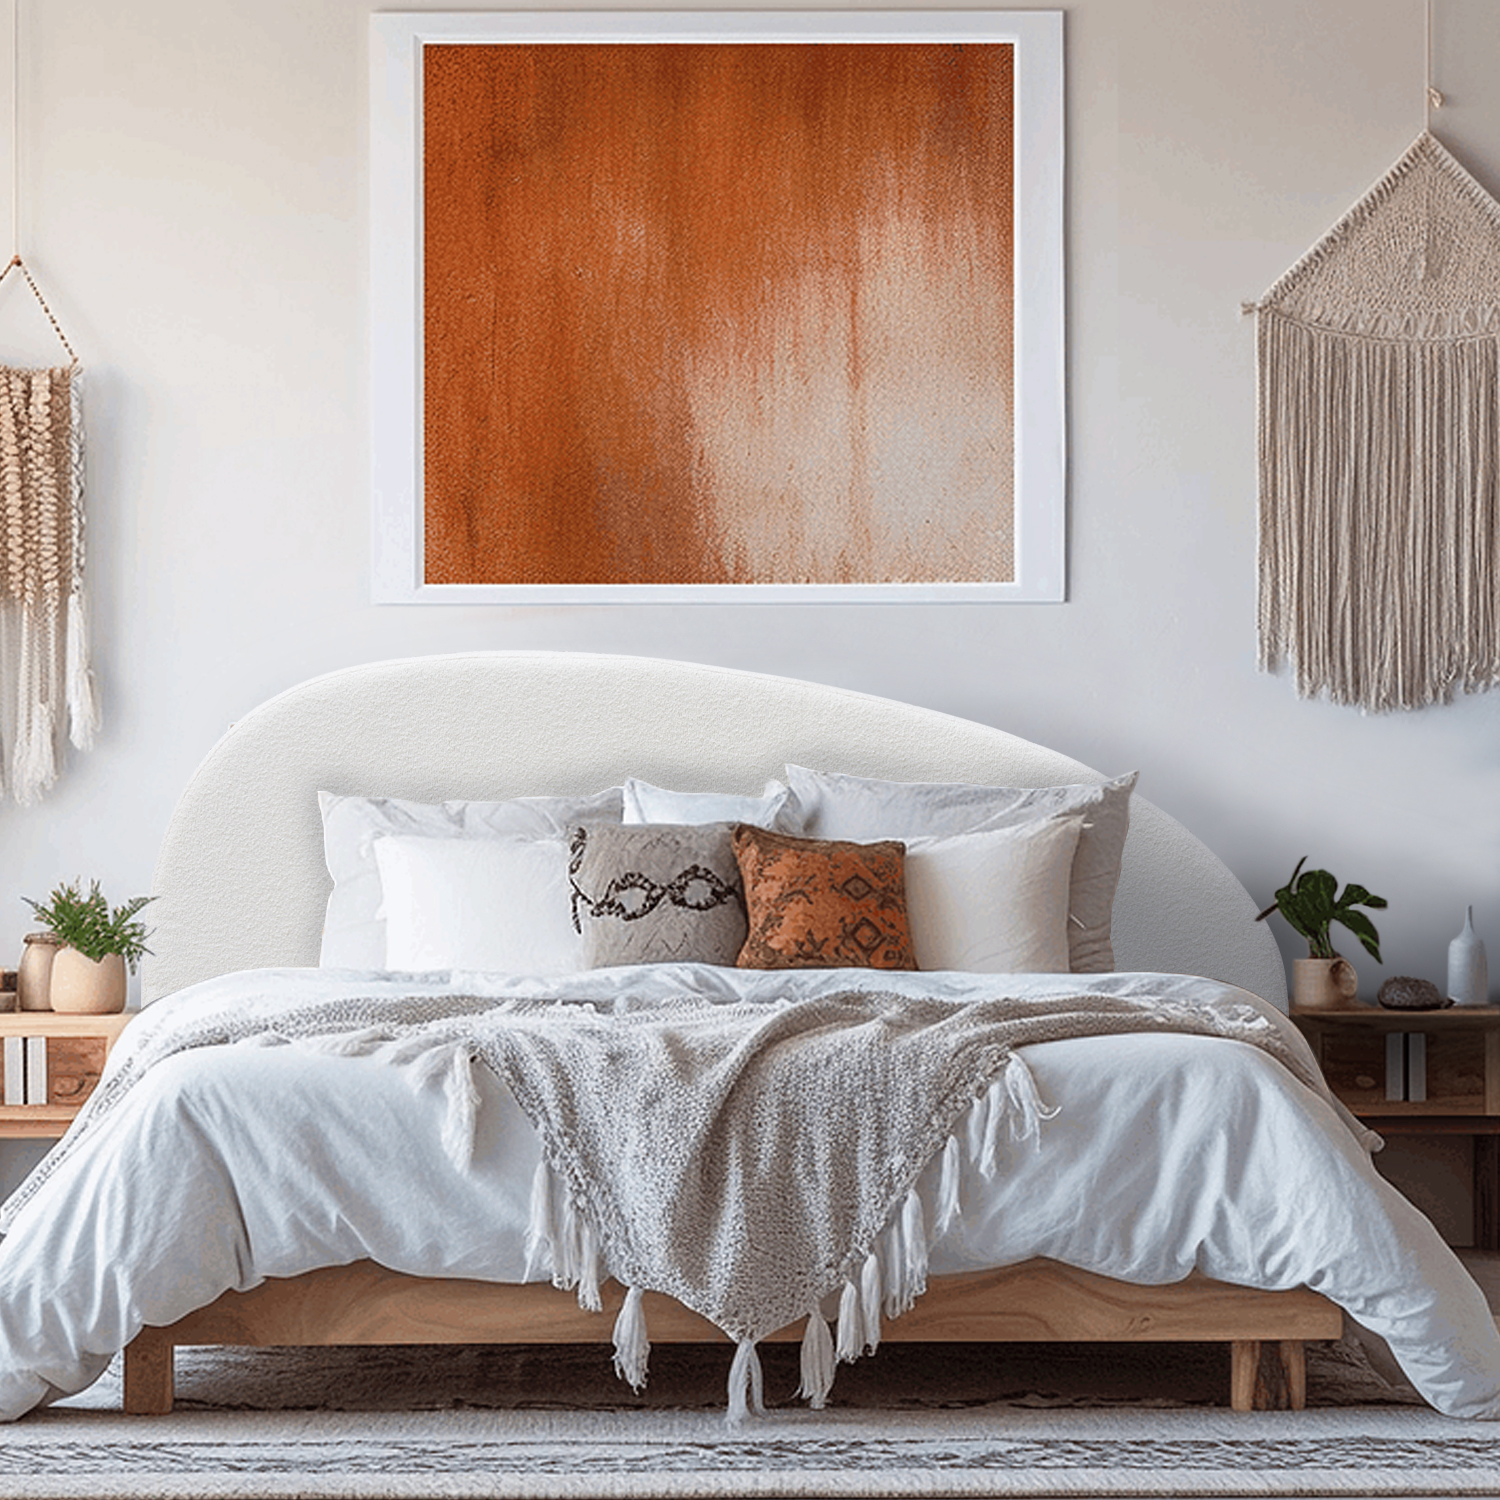 Les Têtes de Lit : Transformer votre chambre avec style et confort